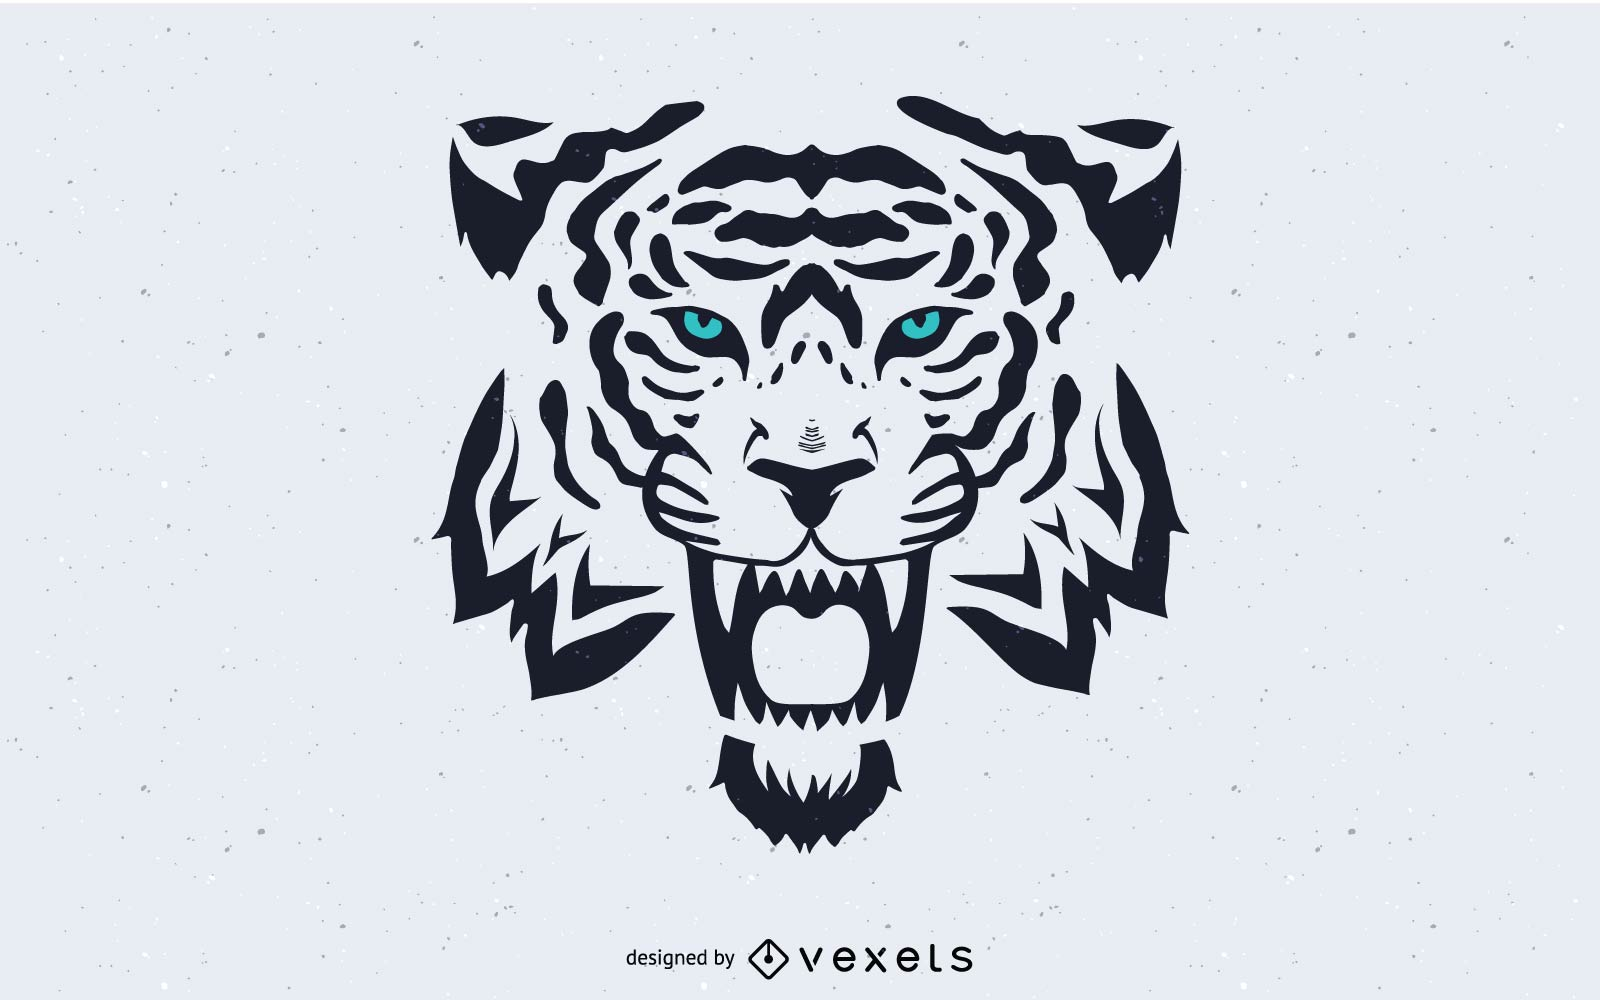 Tiger Head Image Vector - Vector download